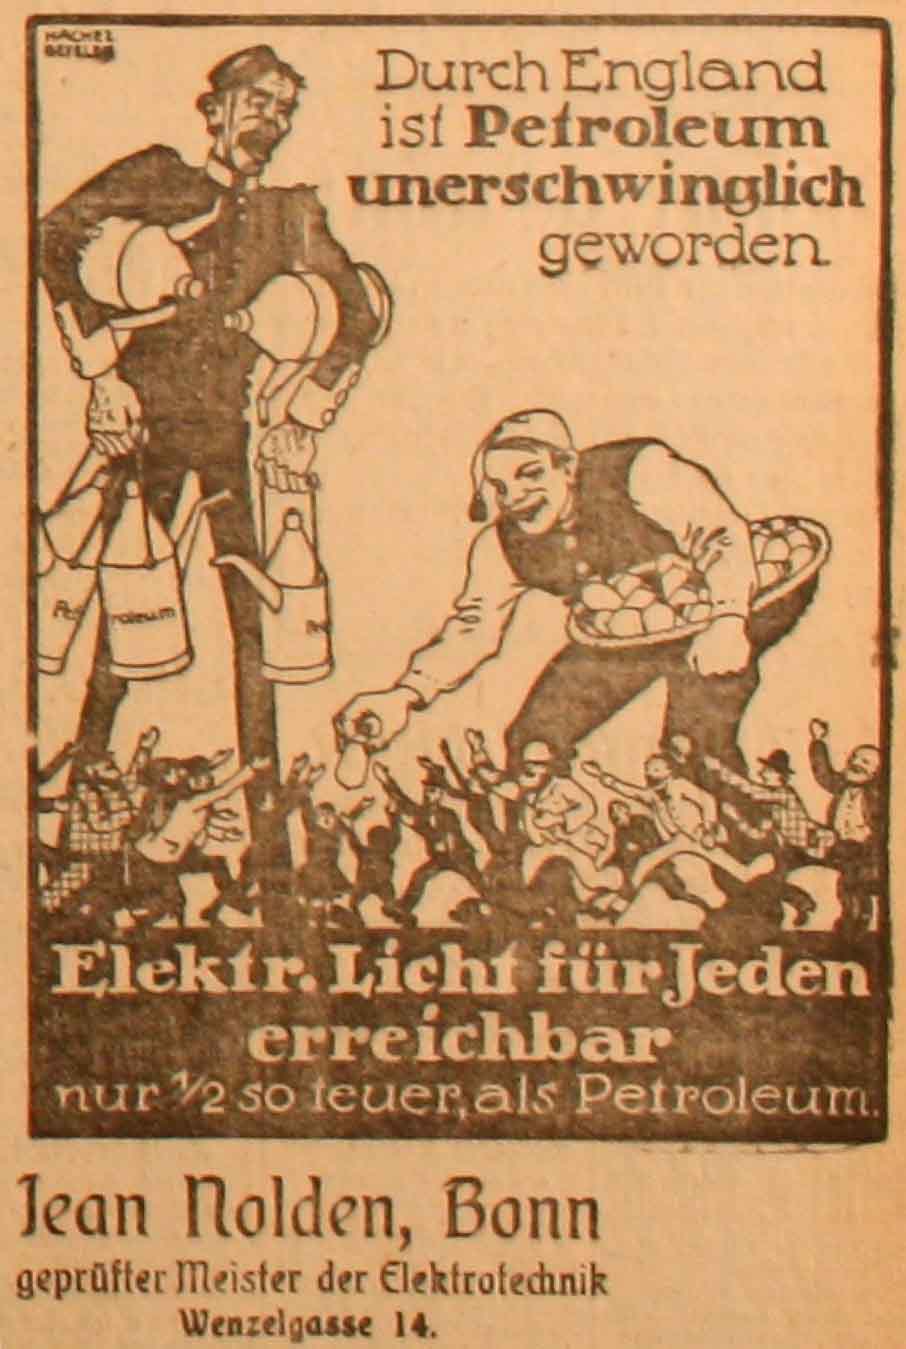 Anzeige im General-Anzeiger vom 14. Februar 1915